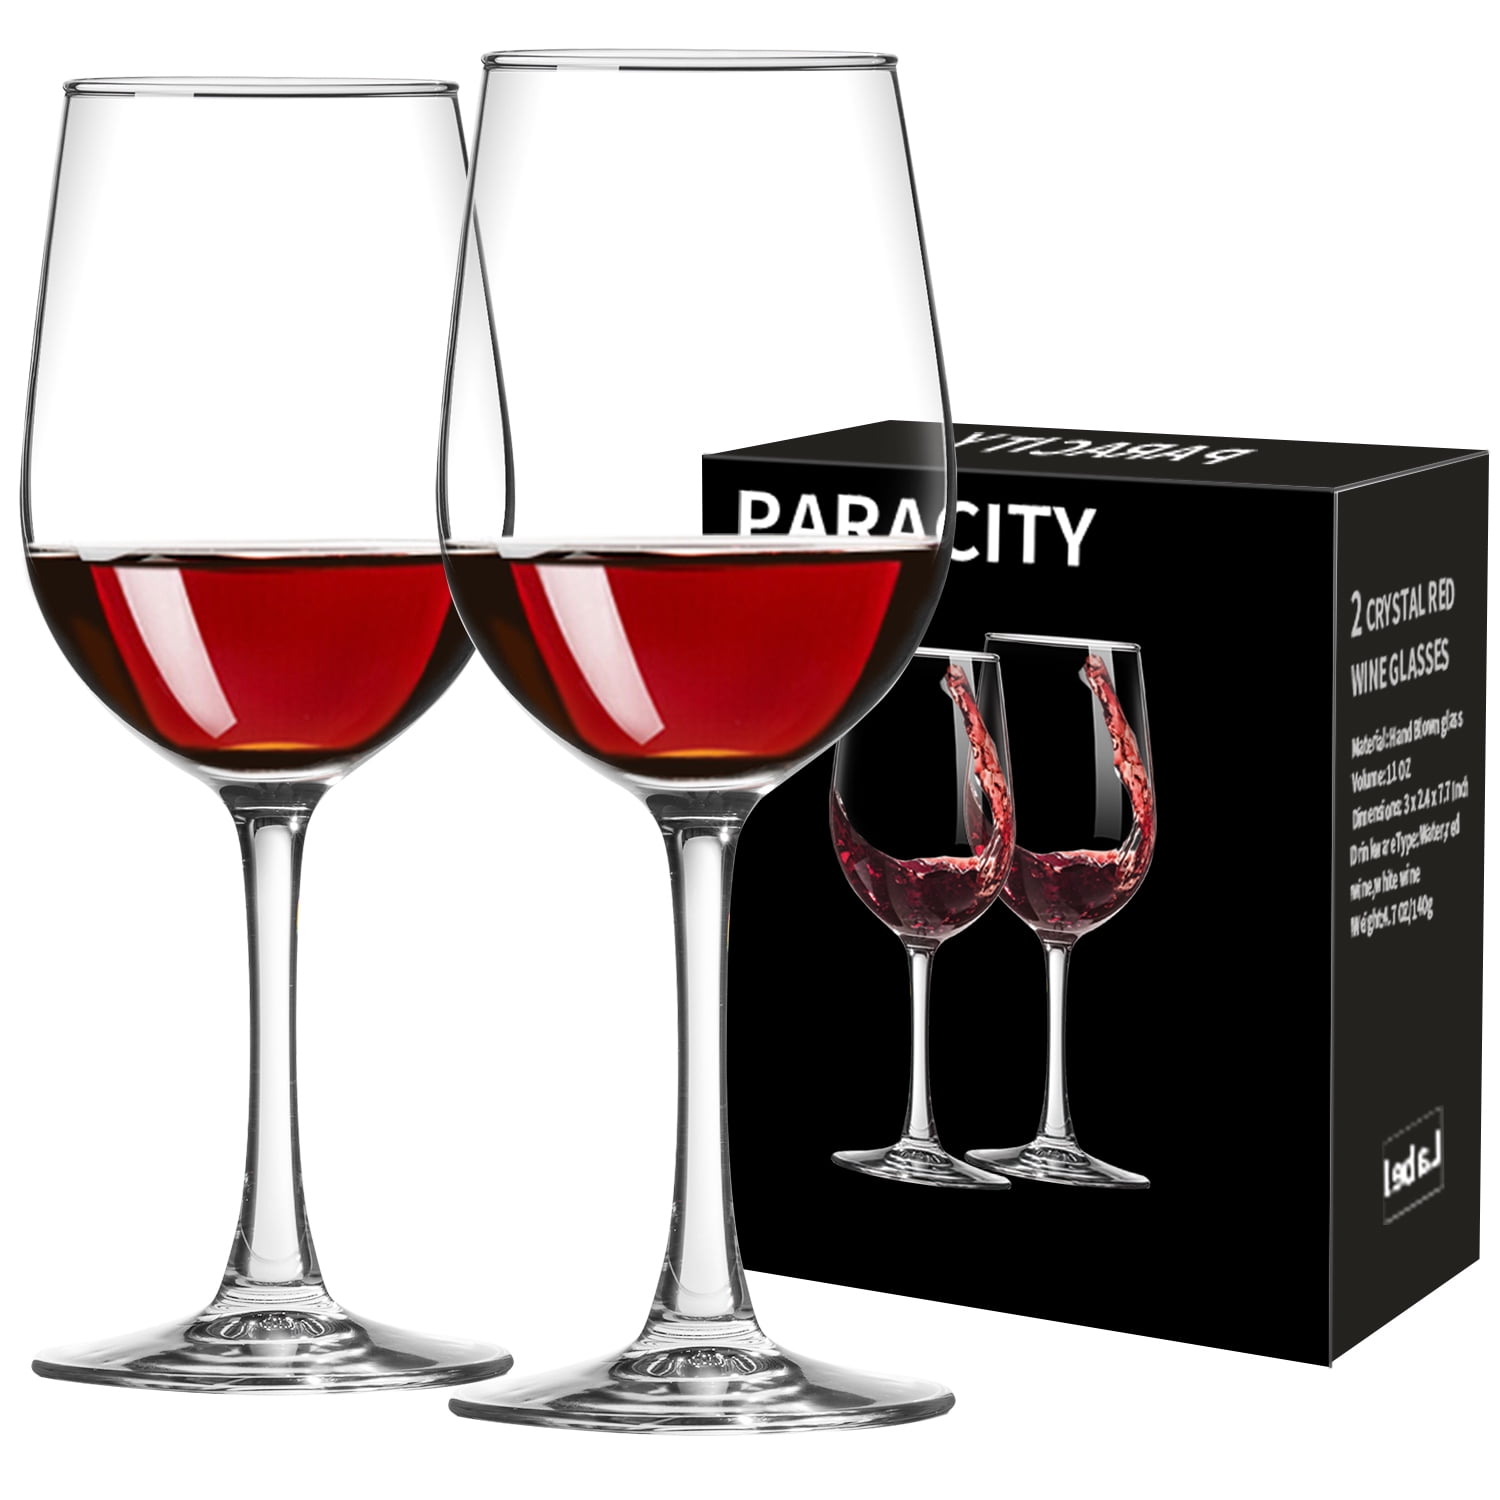 Twine Linger Crystal Wine Glasses Set of 2 - 20oz Stemmed Red Wine Glasses